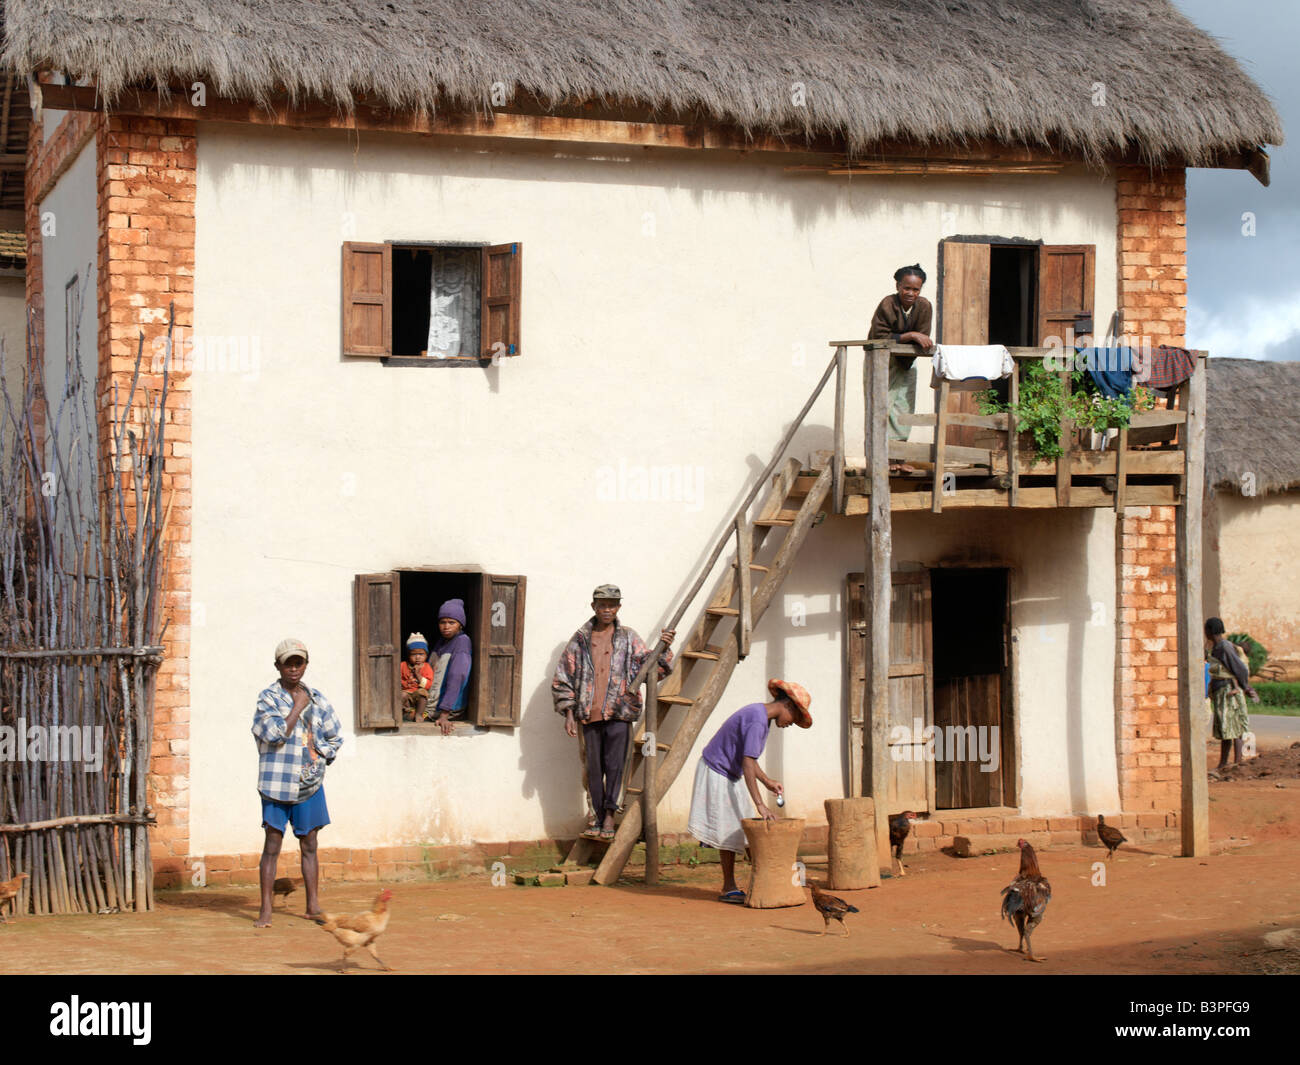 Madagascar, Southern Highlands, Andohatangona. Un attraente casa malgascio della Betsileo persone che vivono a sud-ovest della capitale Antananarivo.La maggior parte delle case costruite dalla Betsileo sono a due piani con cucine e locali di abitazione si trova al primo piano. Quasi tutte dispongono di balconi in legno e alcune sono al di fuori di scale. Il bestiame è spesso mantenuto al piano terra di una casa per una notte.i Betsileo sono operosa gente ed esperto coltivatori di riso. La loro terrazzato e irrigate risaie sono una caratteristica del Madagascar meridionale del paesaggio. Foto Stock